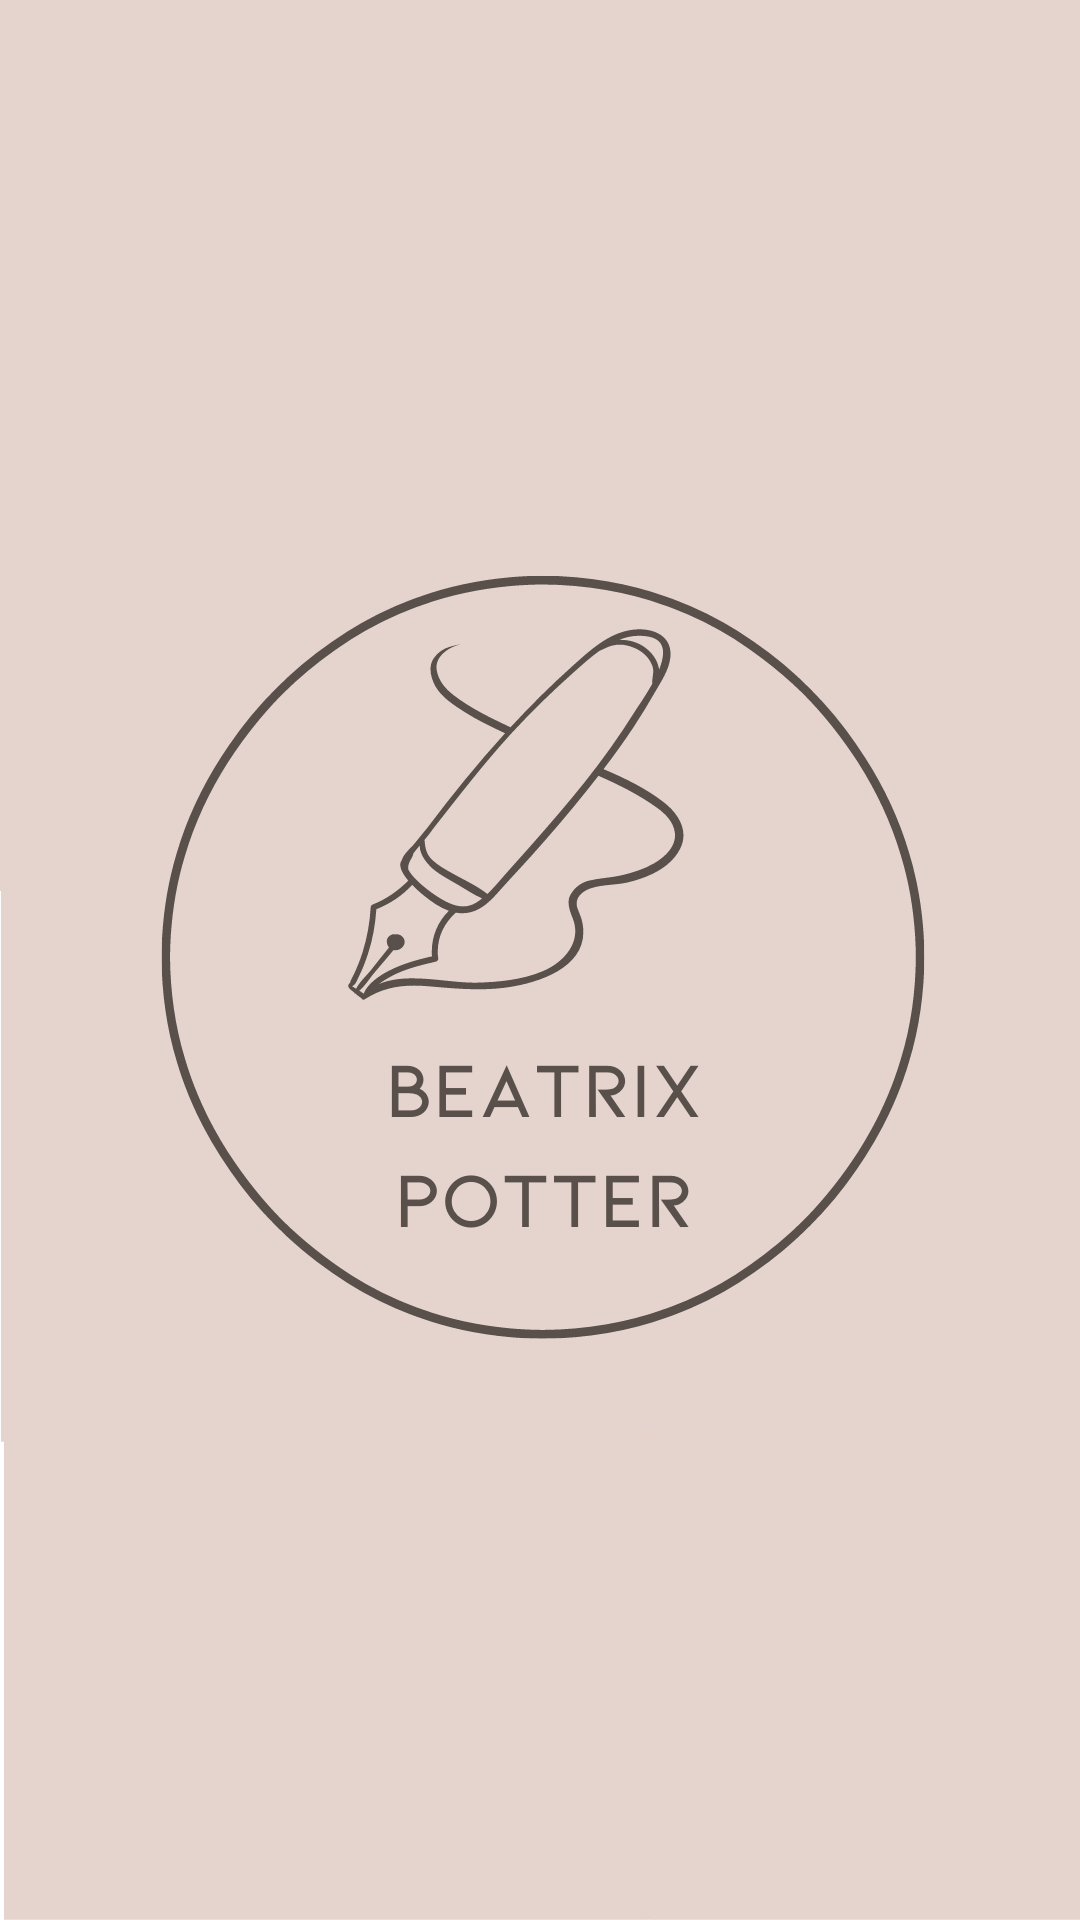 Beatrix Potter Letter - Author